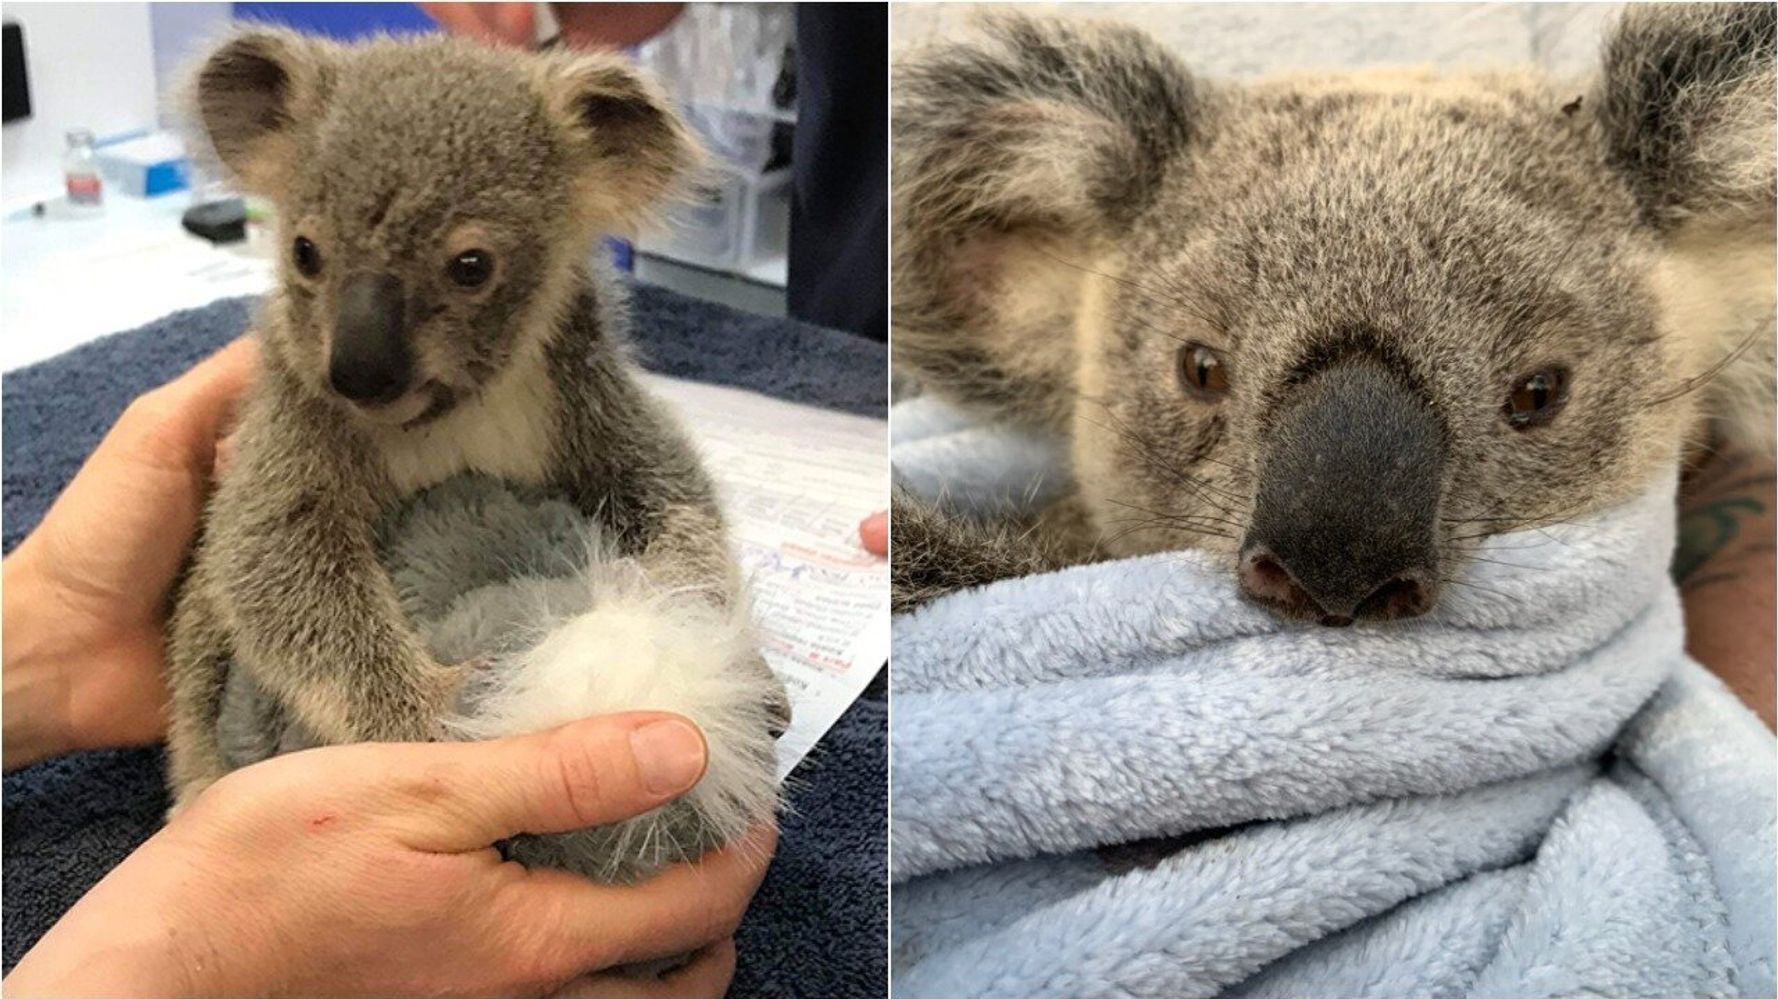 5 ways to help koalas this Save the Koala Day, WWF-Australia, 5 ways to  help koalas this Save the Koala Day